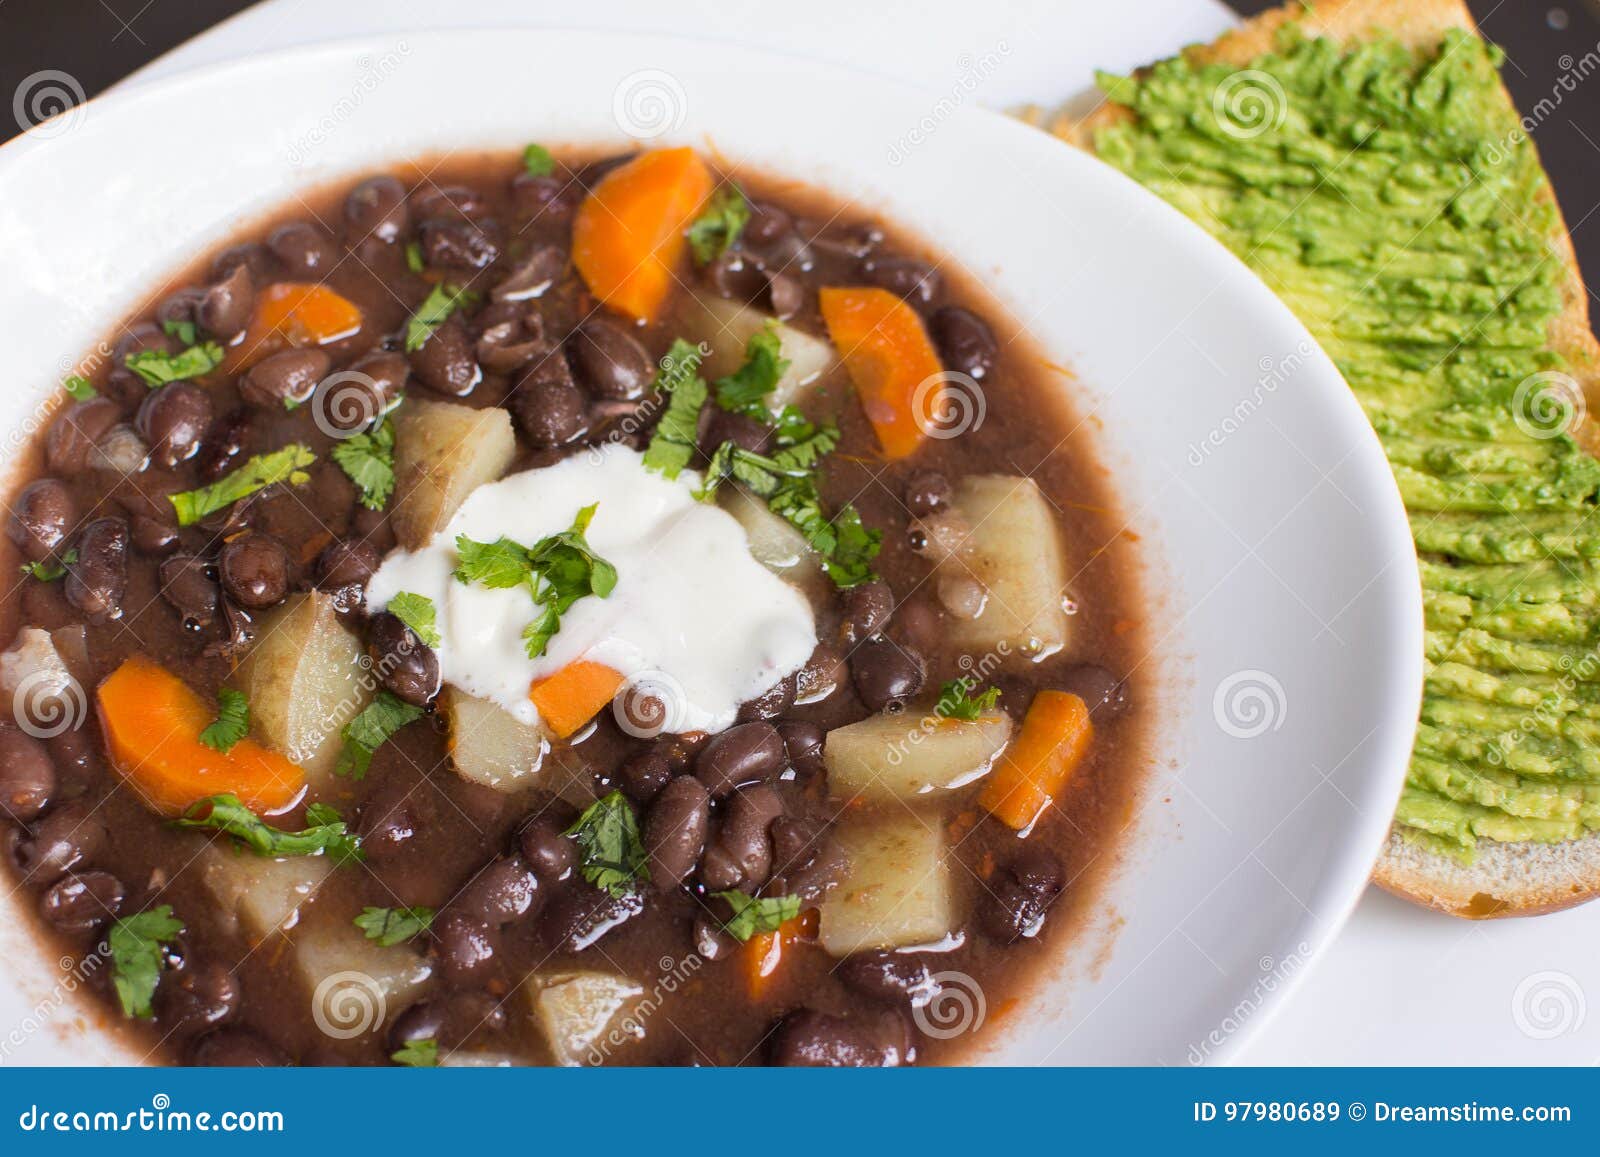 black beans soup